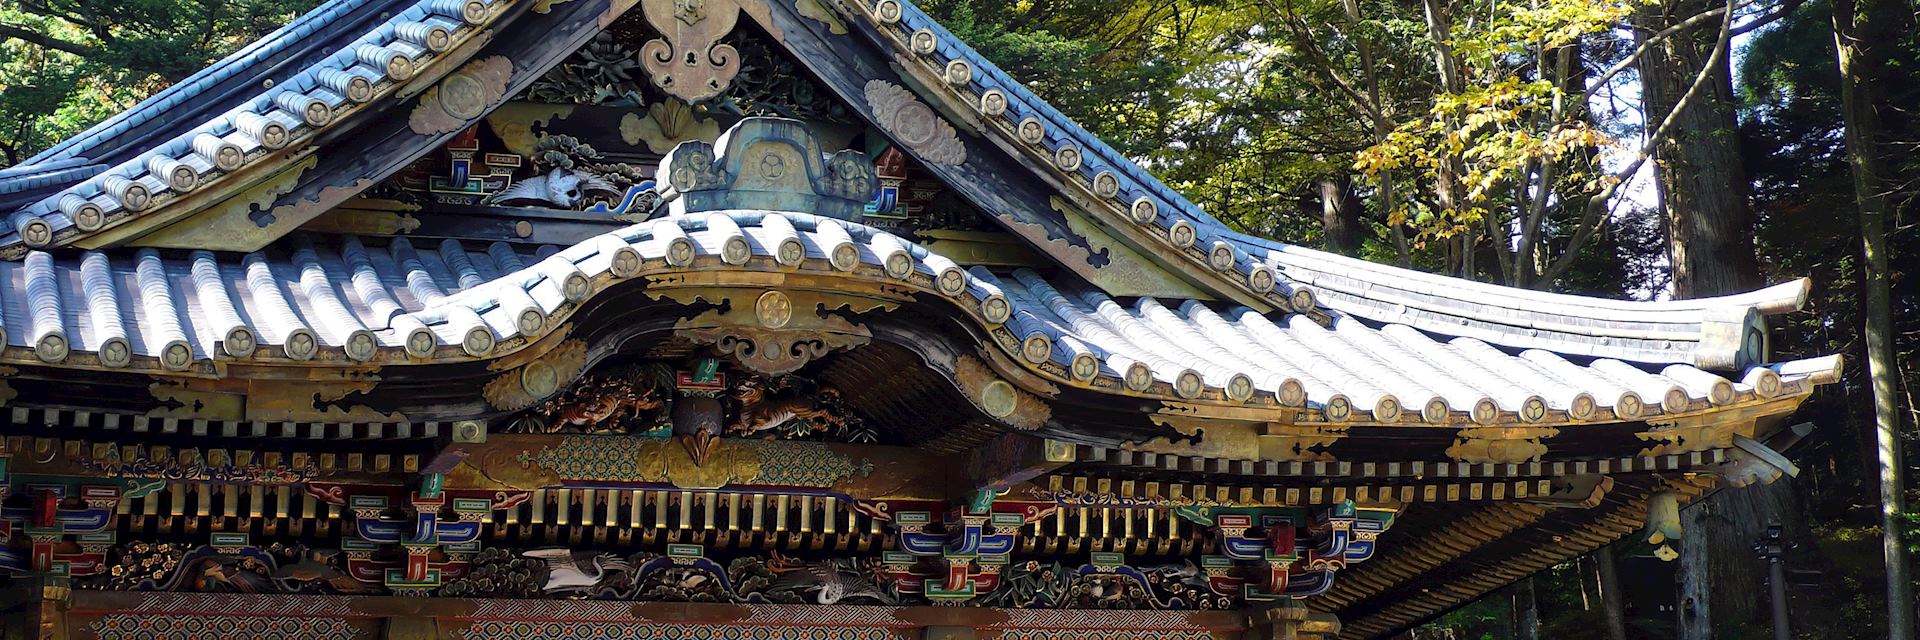 Shrine in Nikko, Tochigi Prefecture